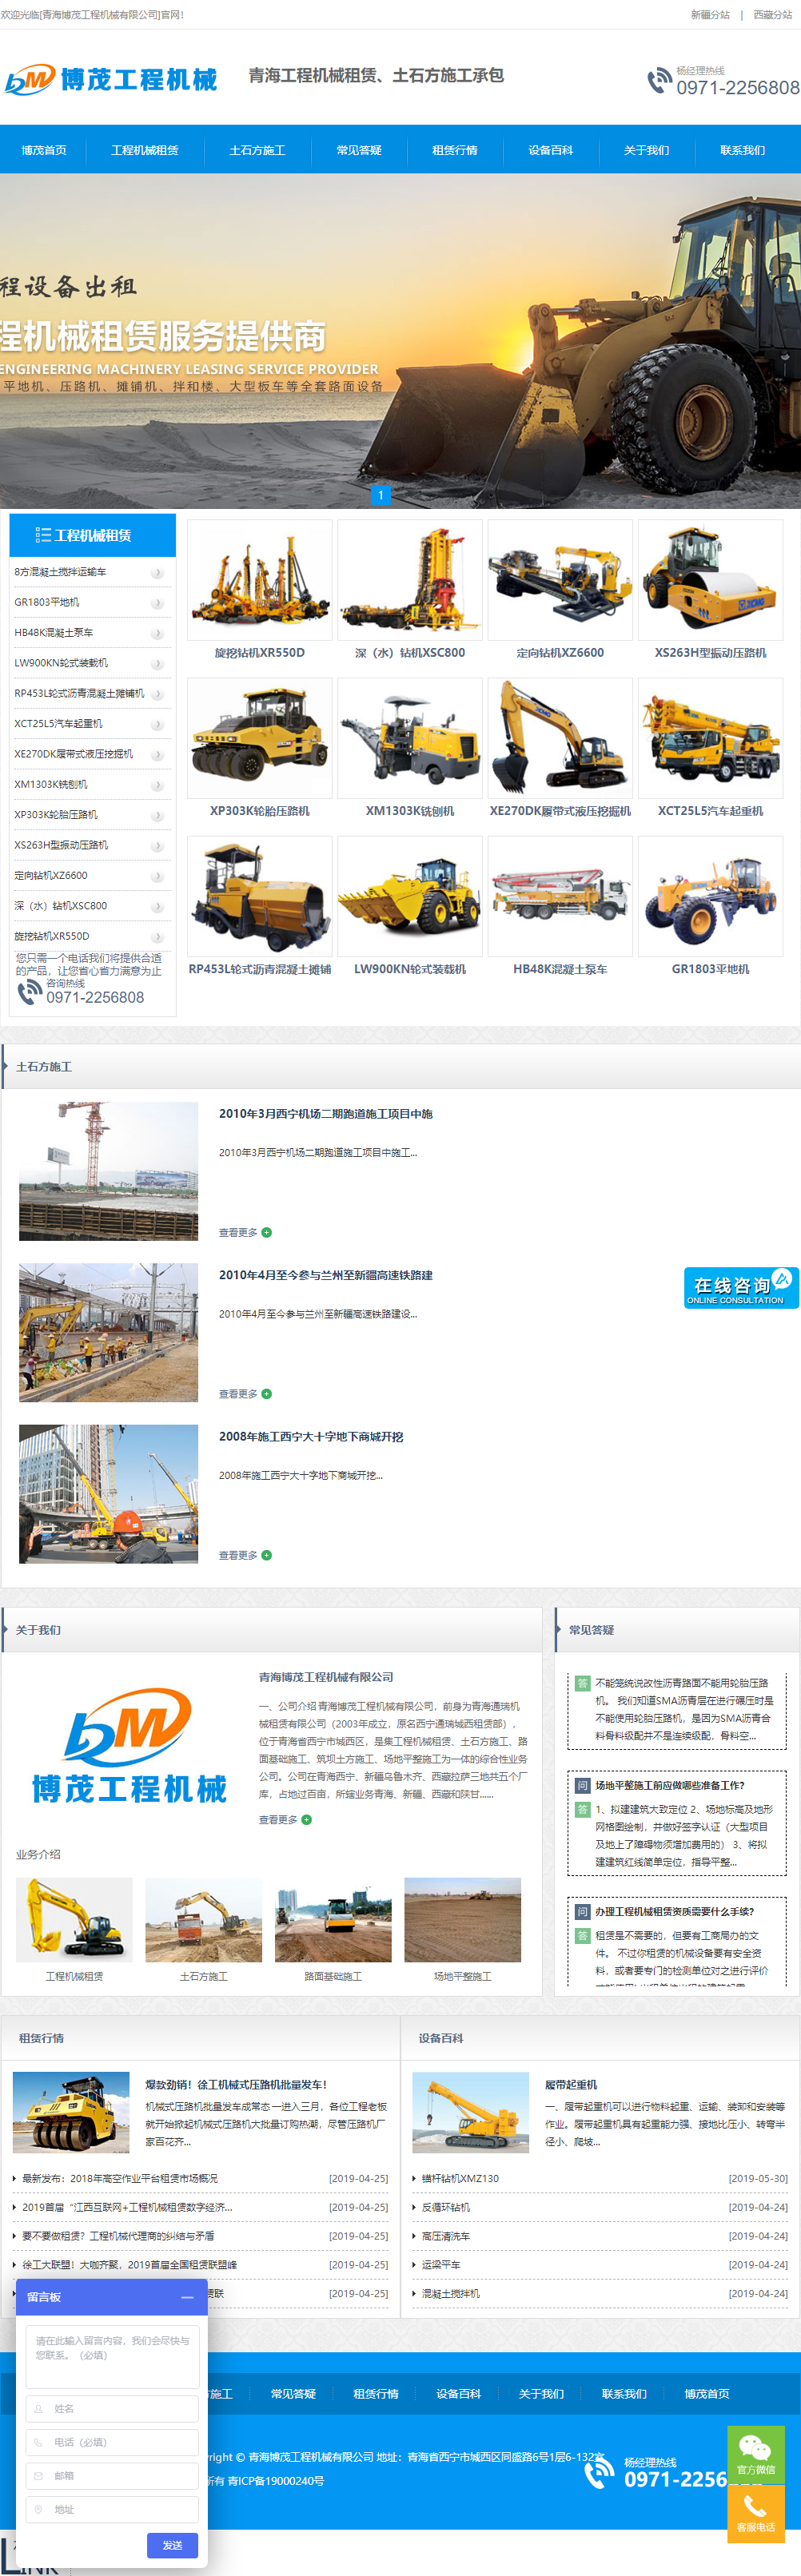 青海博茂工程机械有限公司网站案例